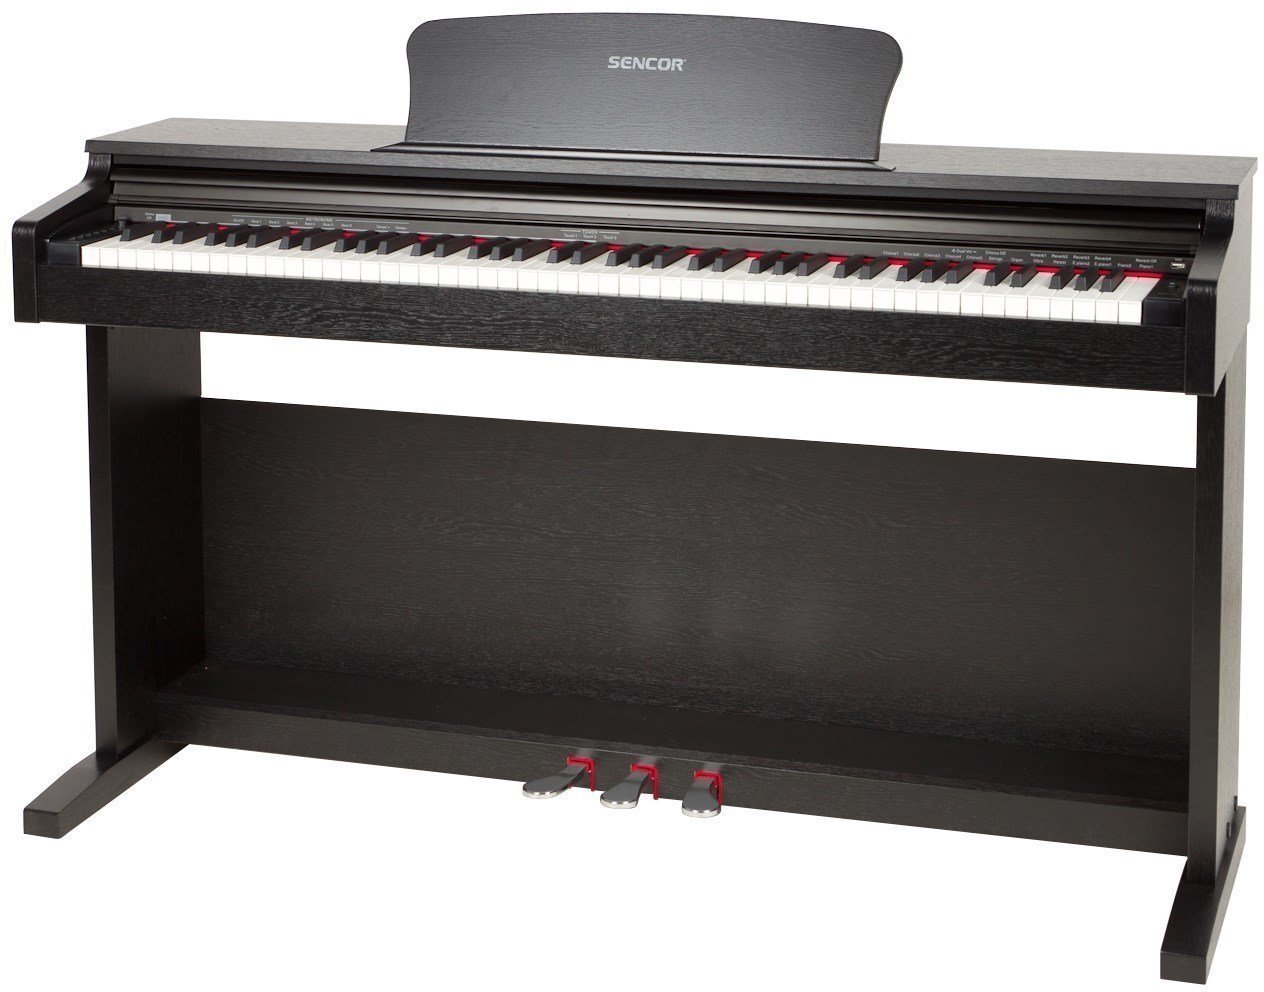 Digital Piano SENCOR SDP 100 Schwarz Digital Piano